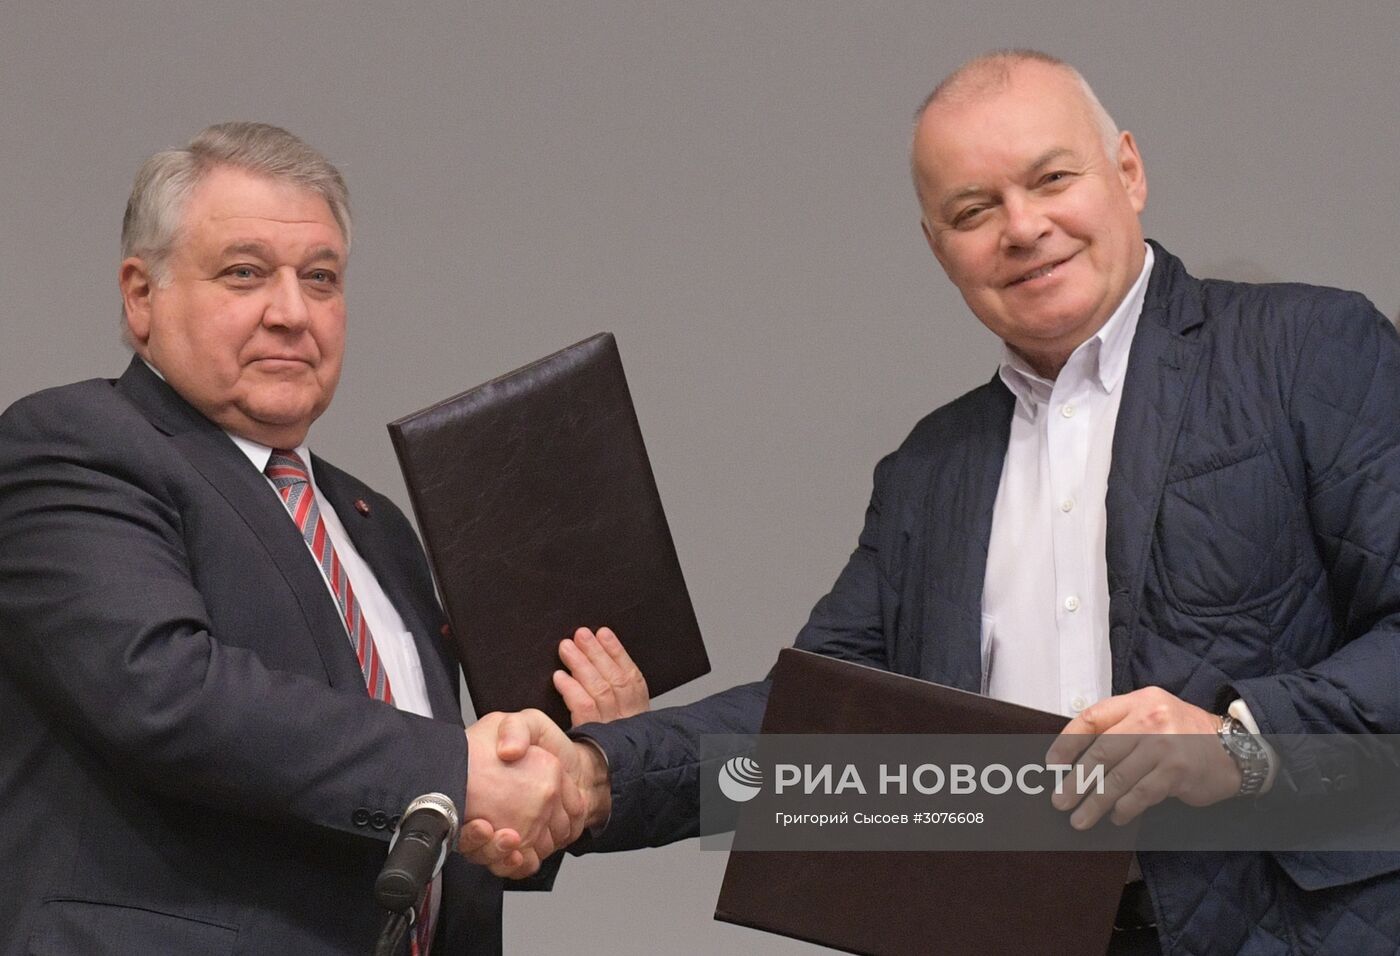 Подписание соглашения между МИА "Россия сегодня" и НИЦ "Курчатовский институт"